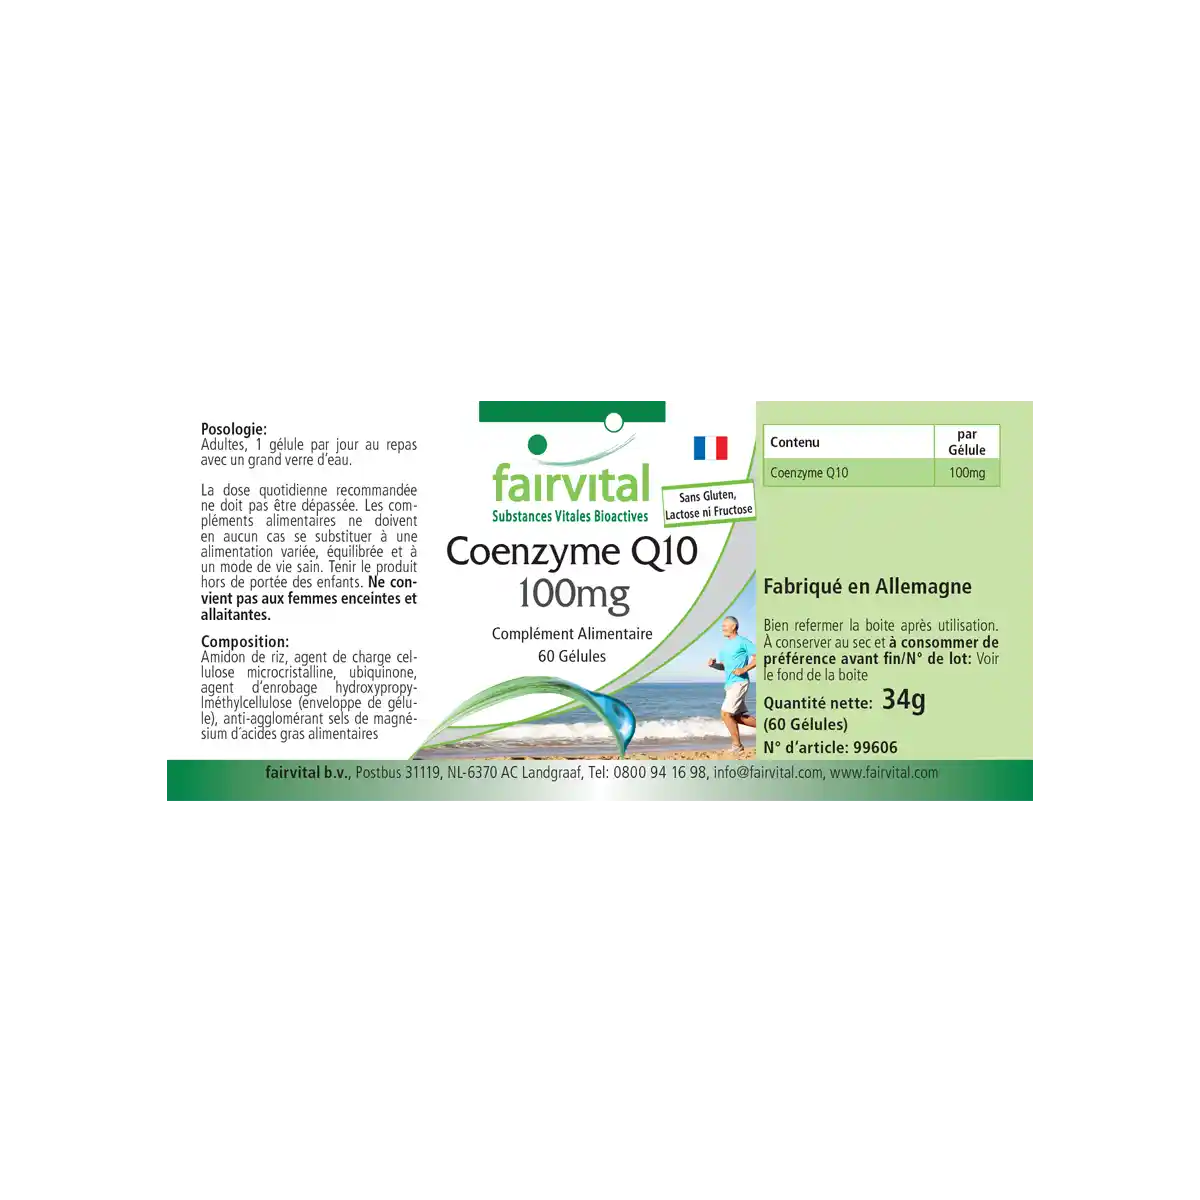 Co-enzym Q10 100mg - 60 capsules